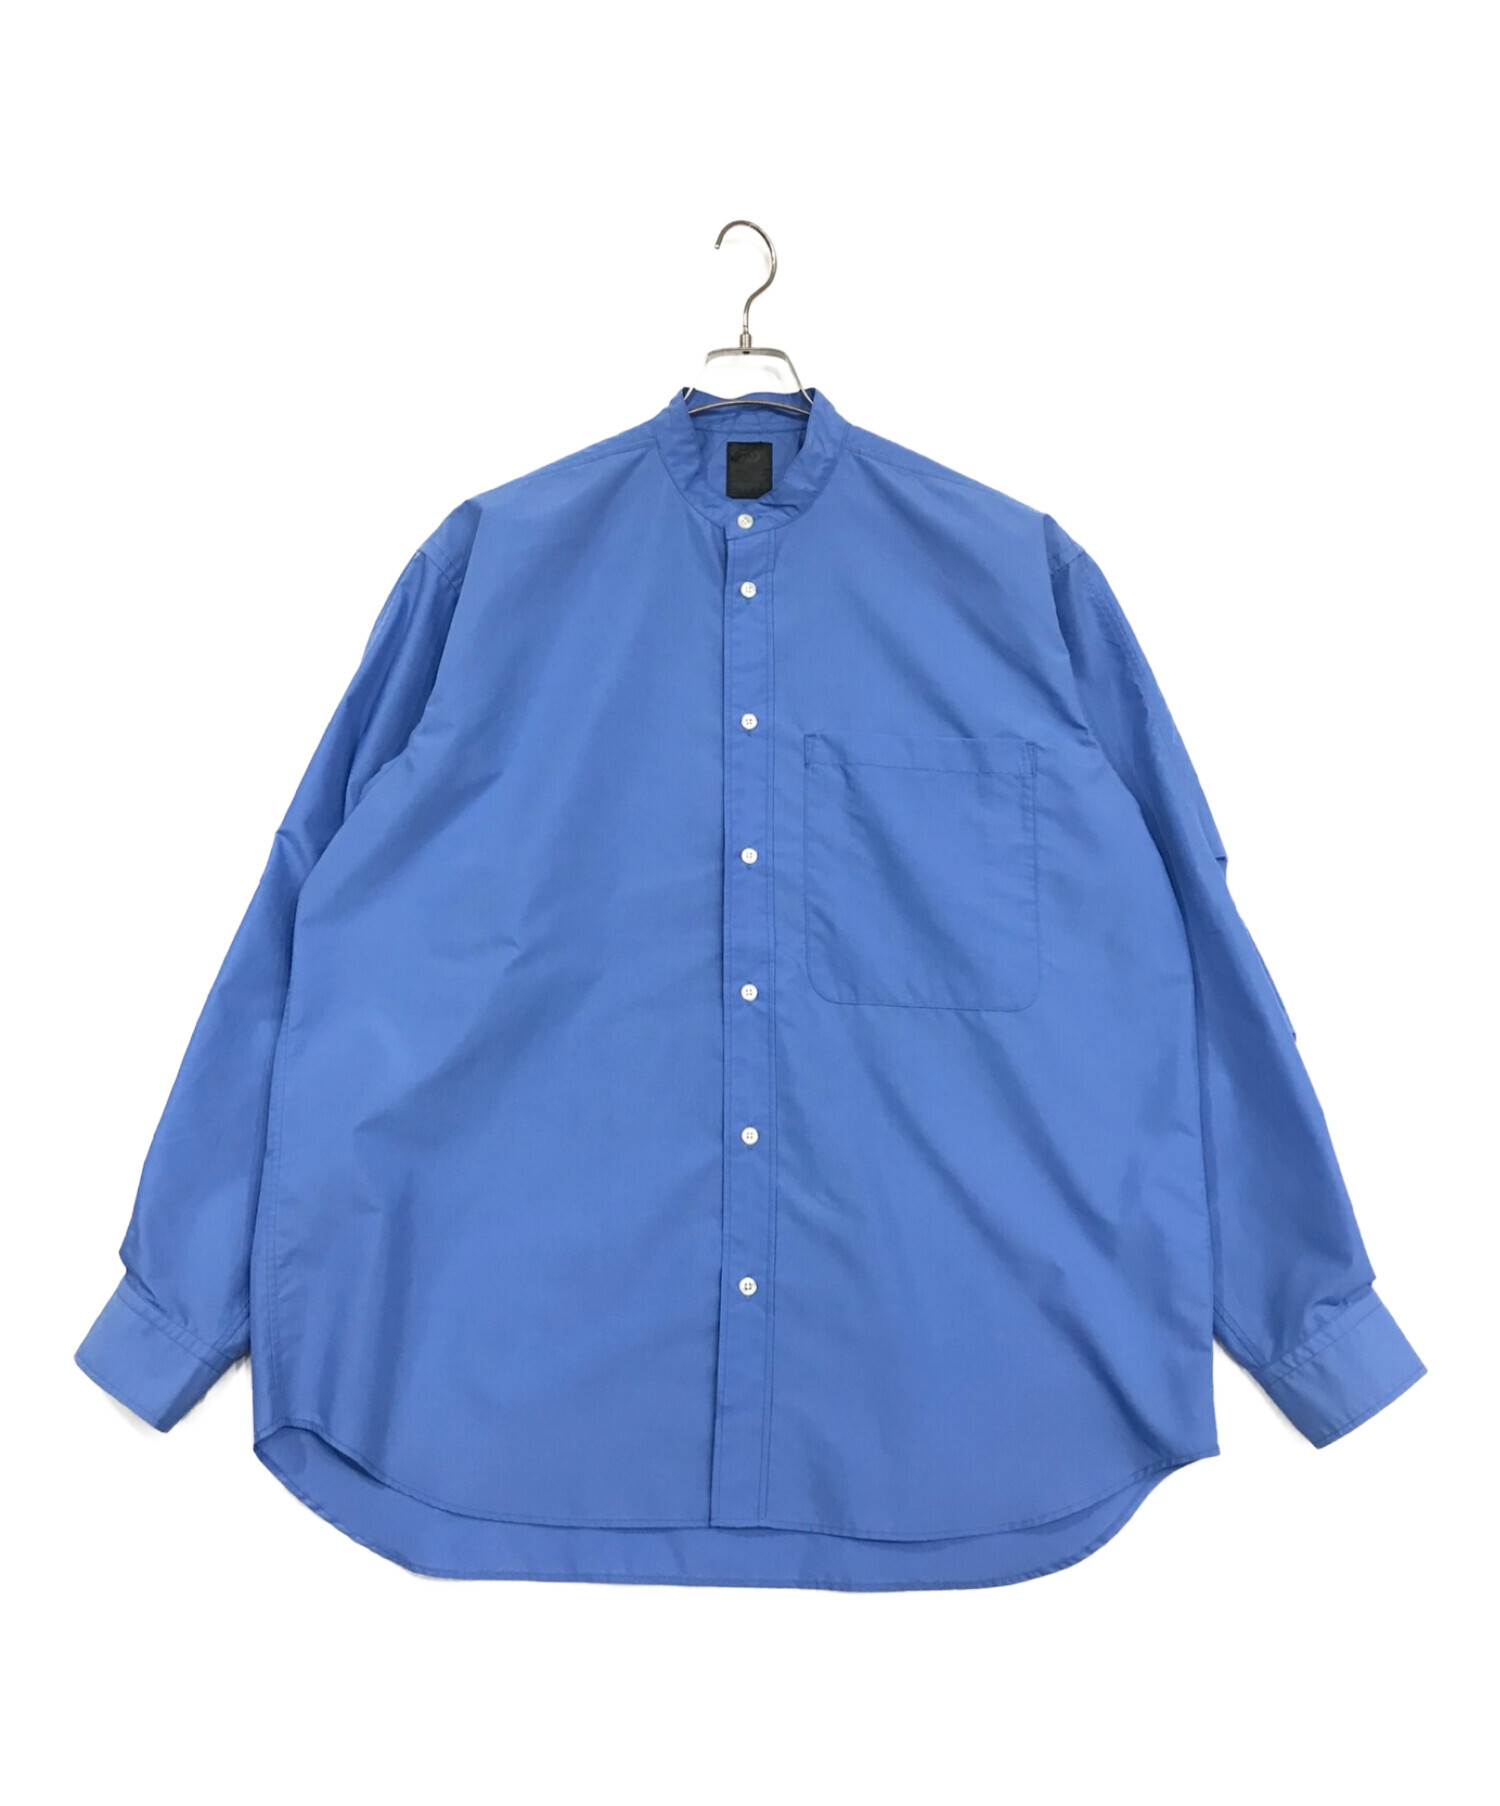 DAIWA PIER39 (ダイワ ピア39) TECH BAND COLLAR SHIRTS L/S/テックバンドカラーシャツ ブルー サイズ:M